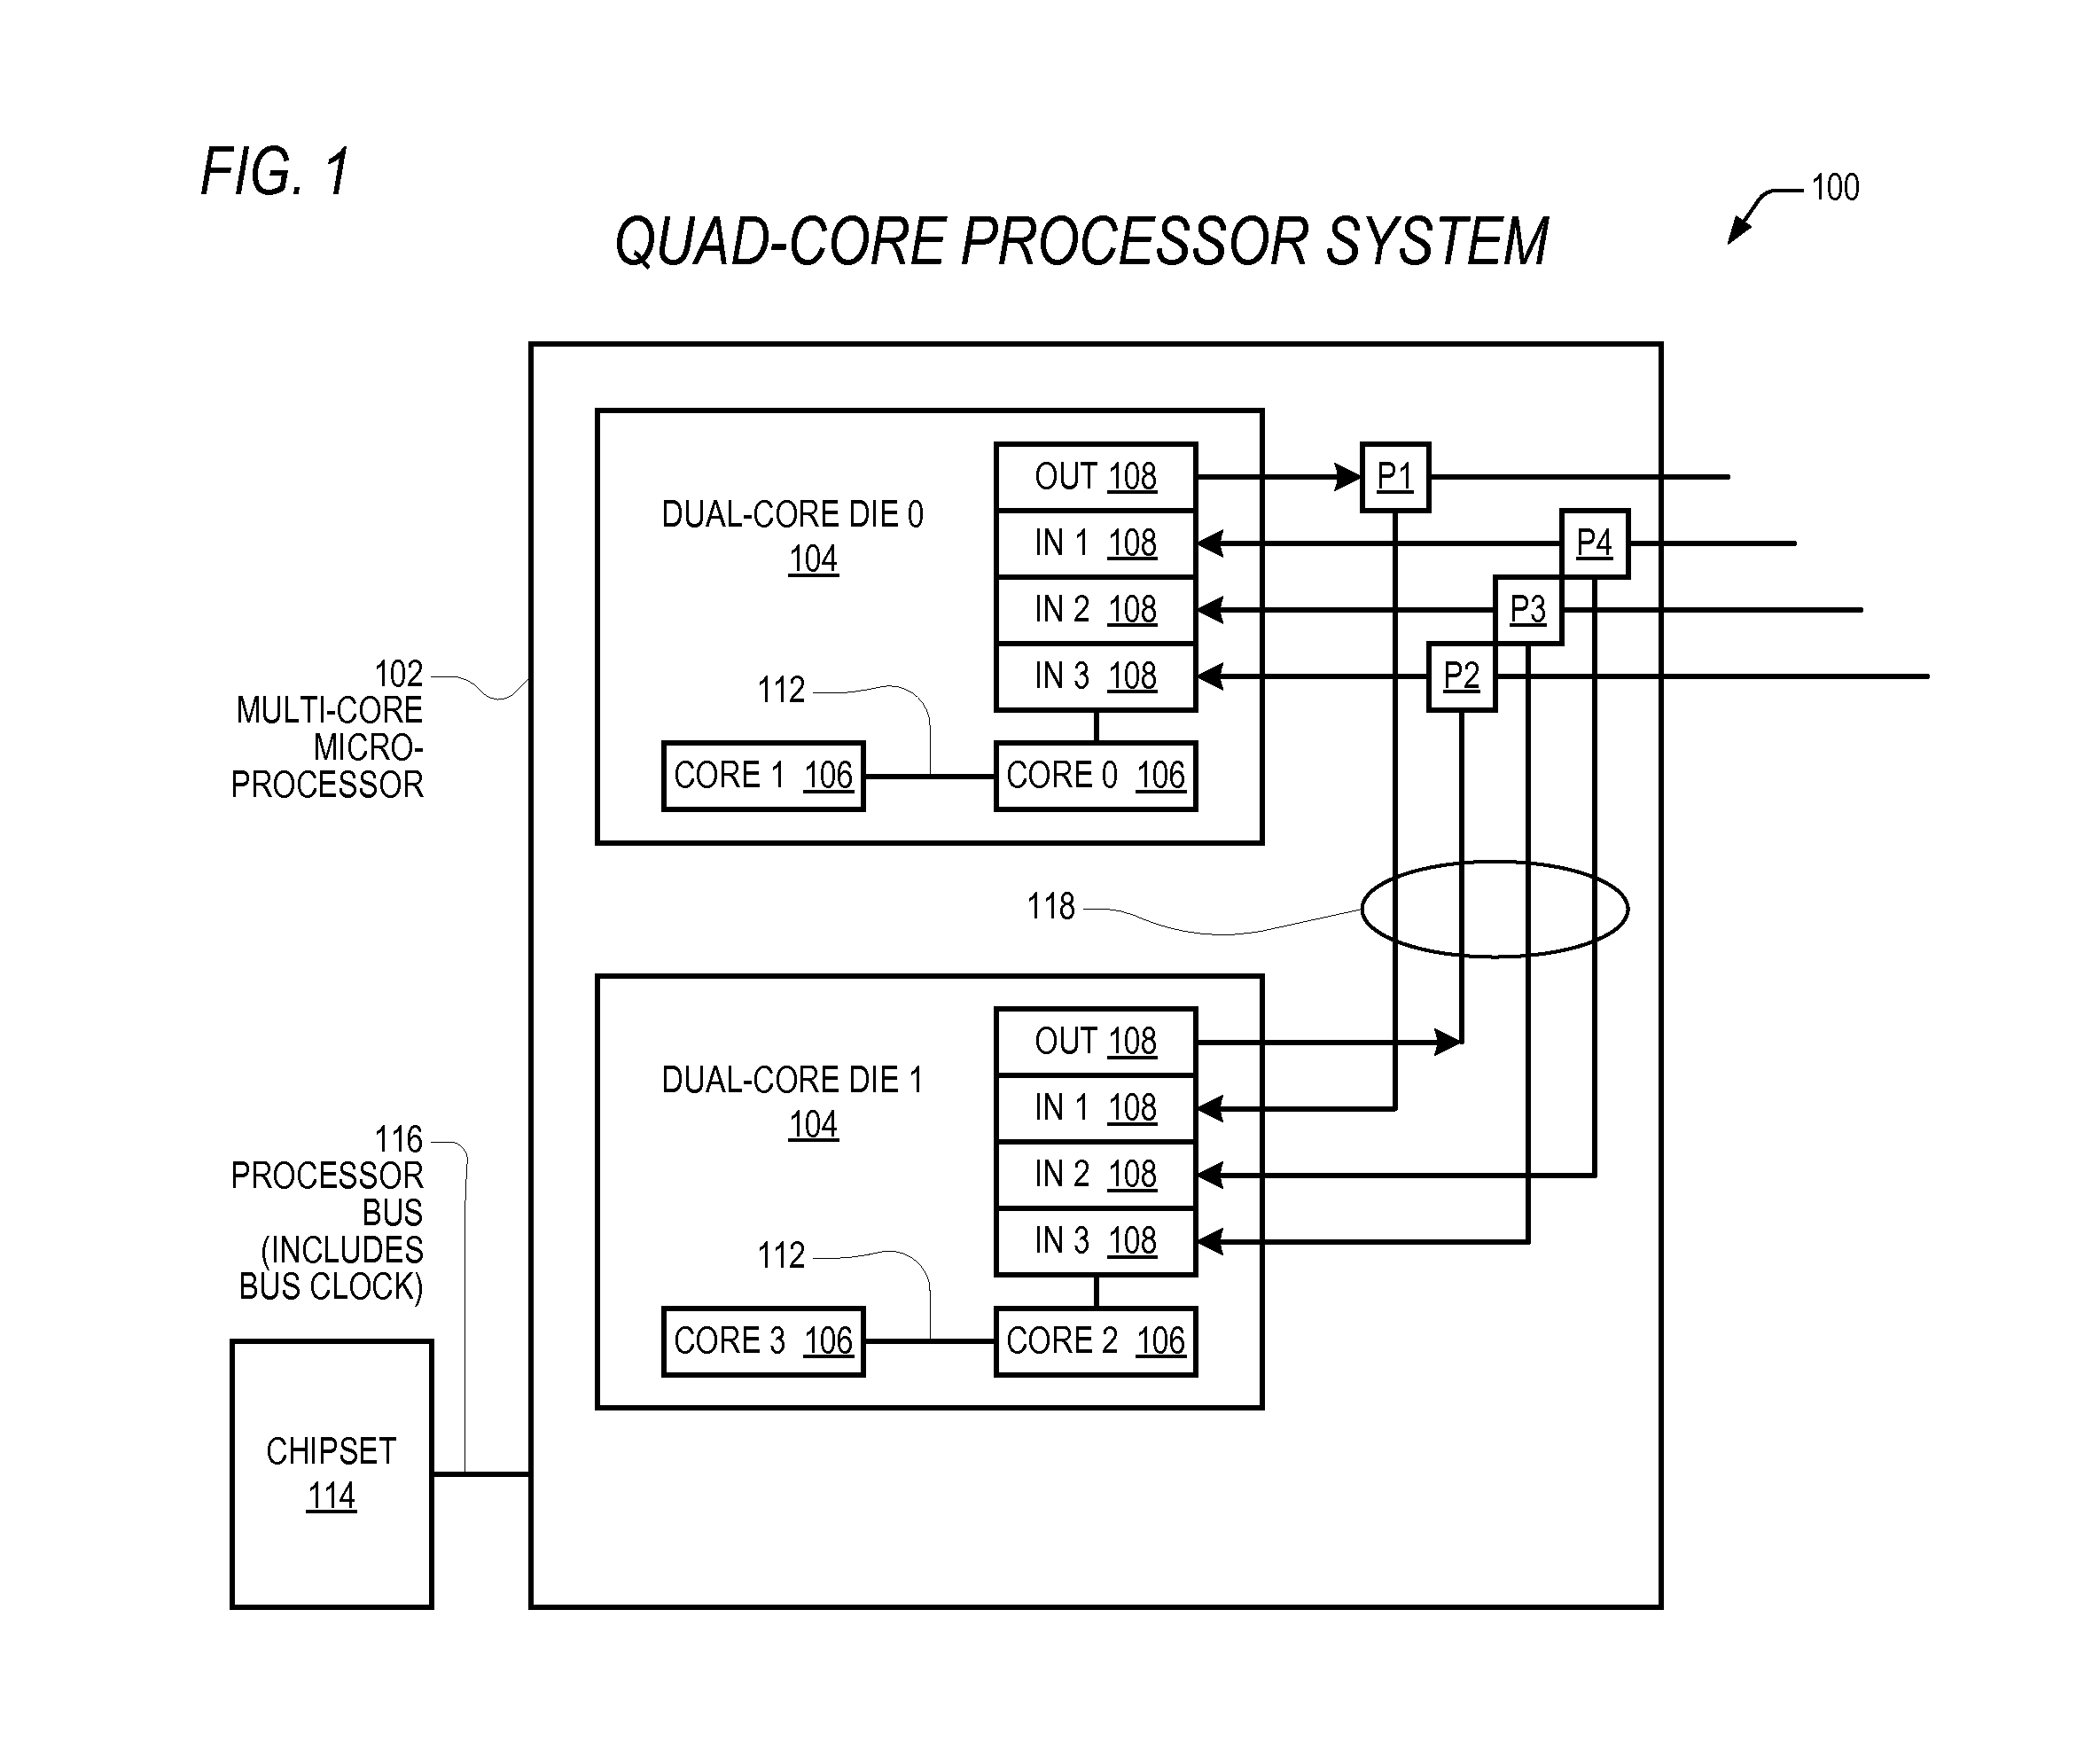 Dynamic multi-core microprocessor configuration discovery